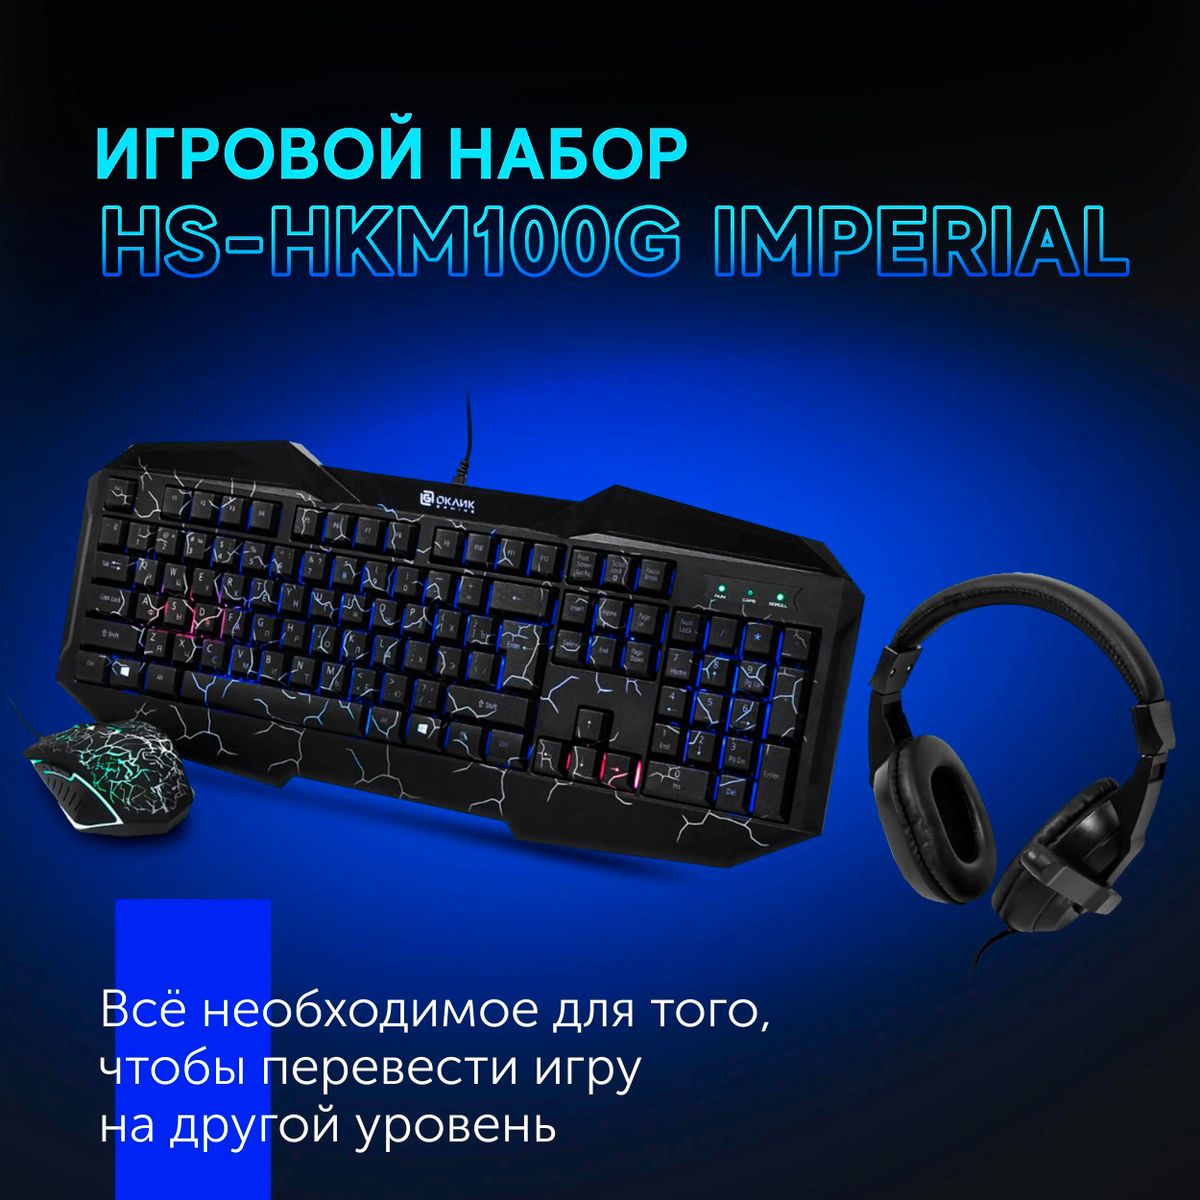 Комплект Оклик HS-HKM100G IMPERIAL (клав/мышь/гарнитура) черный (489352)